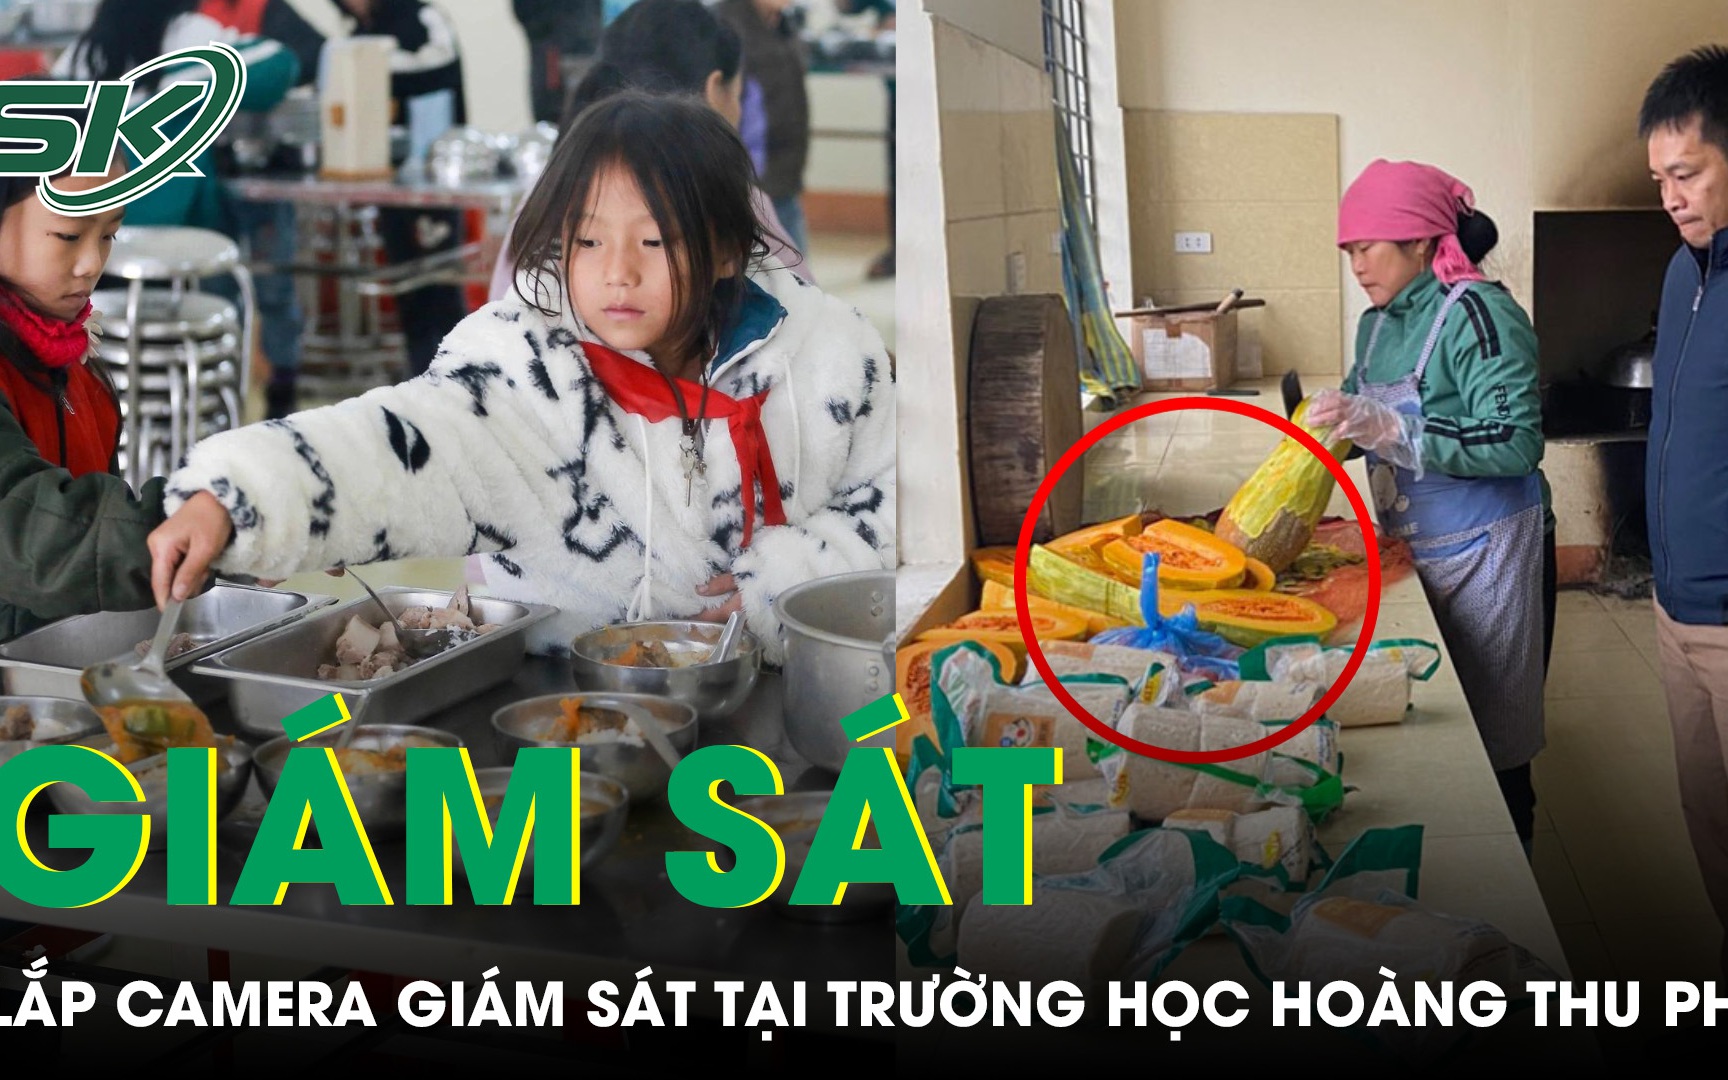 Sở GD&ĐT Lào Cai chỉ đạo công khai tài chính, lắp camera giám sát tại bếp ăn trường học